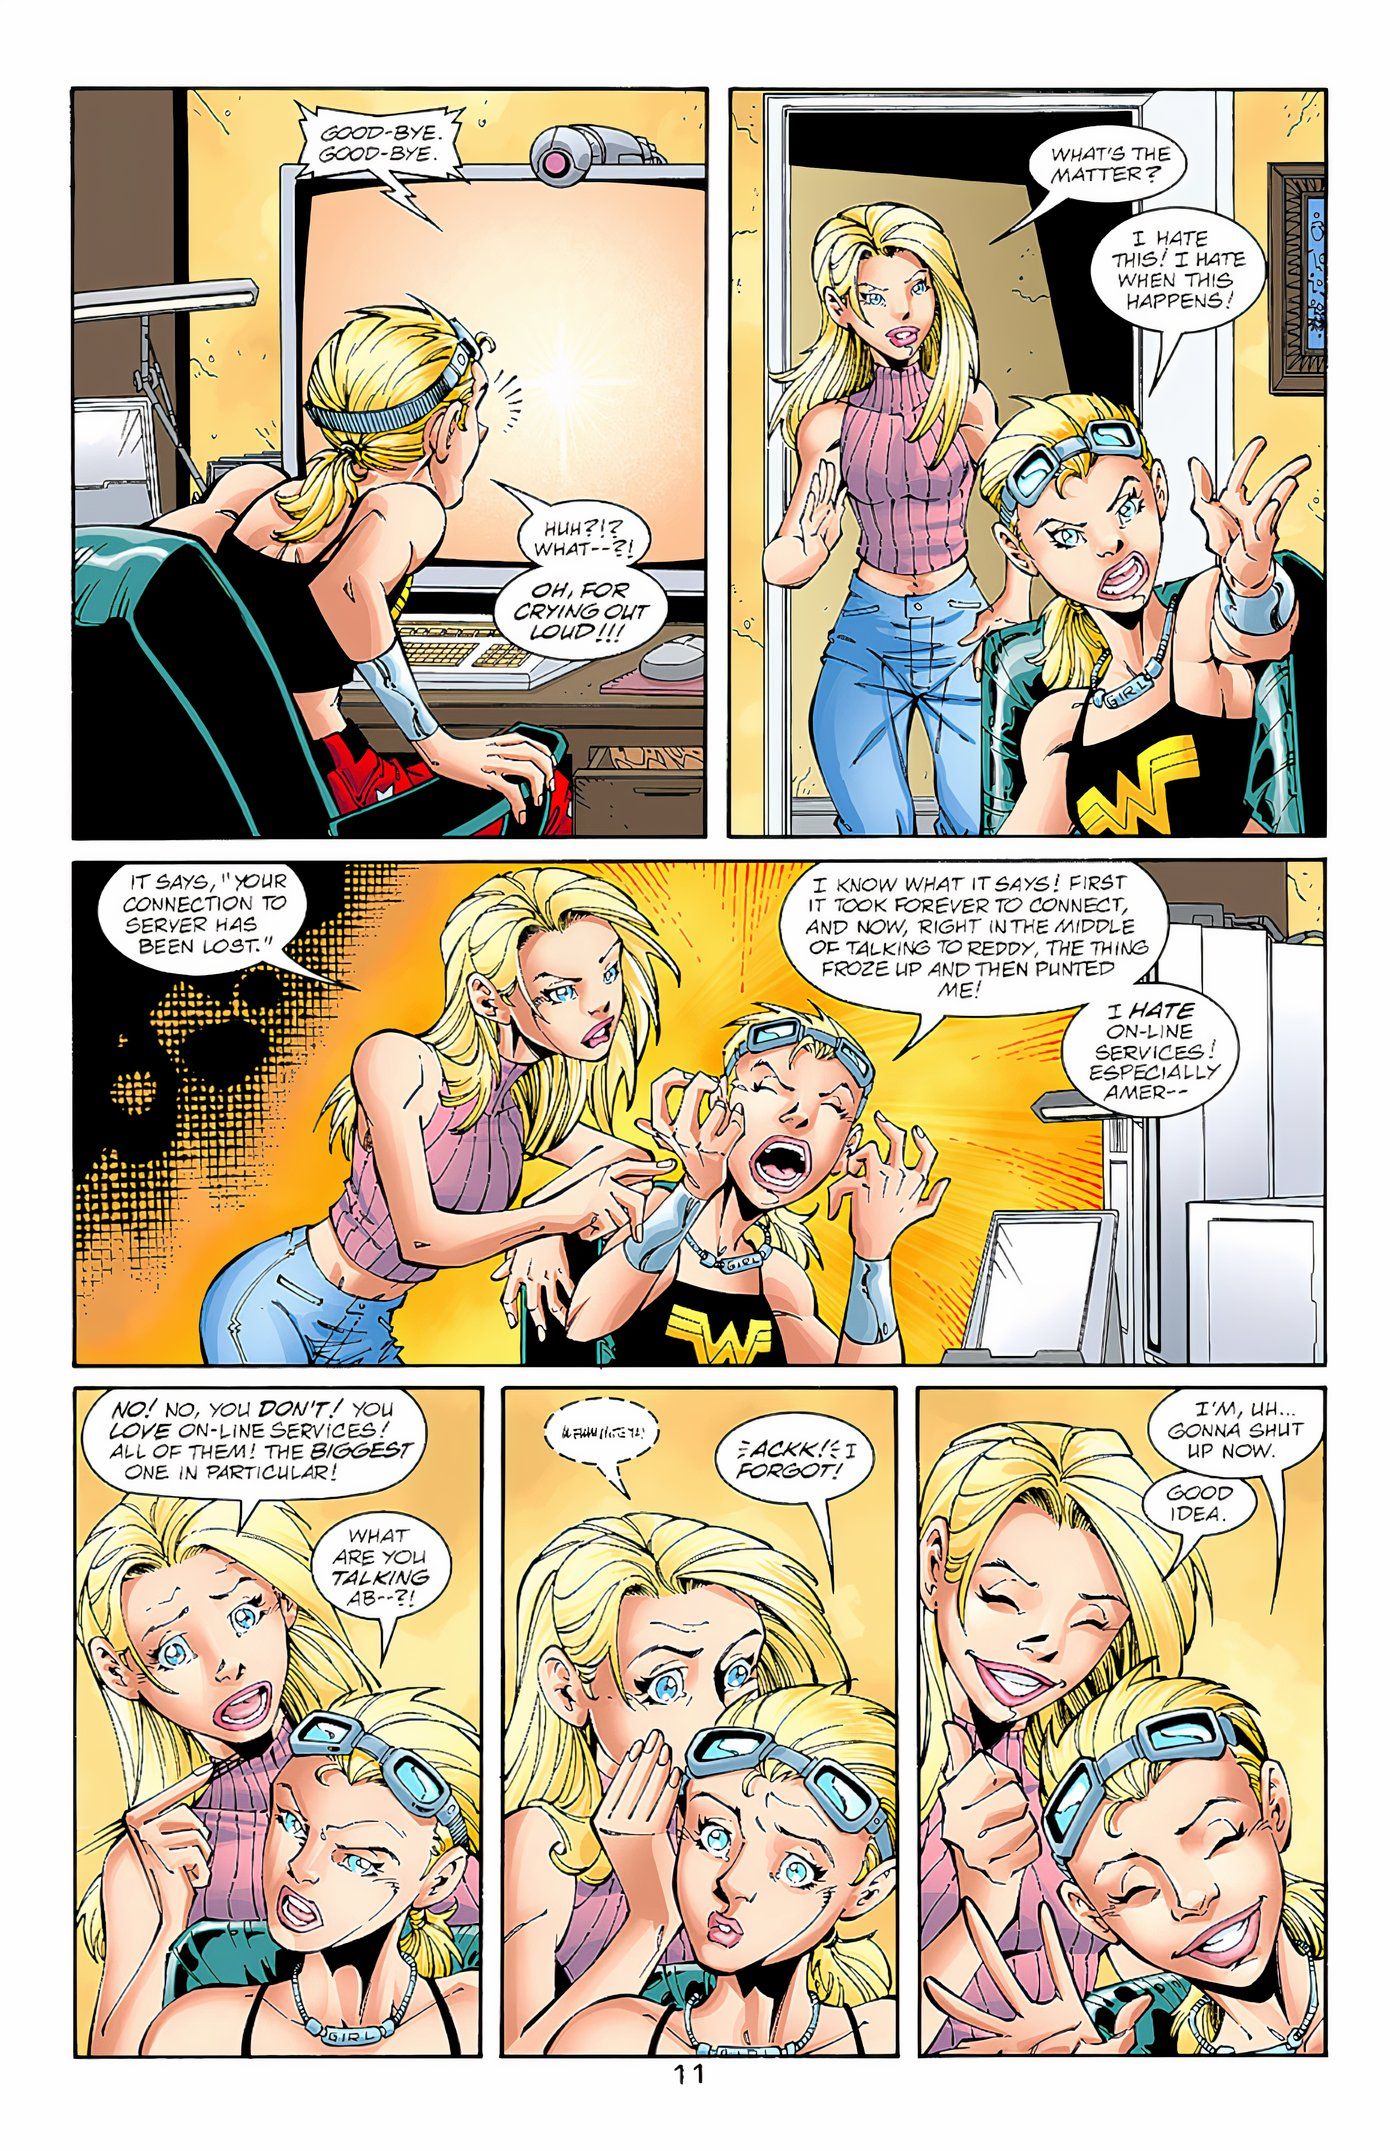 Cassie descobre que a DC foi comprada pela Time Warner